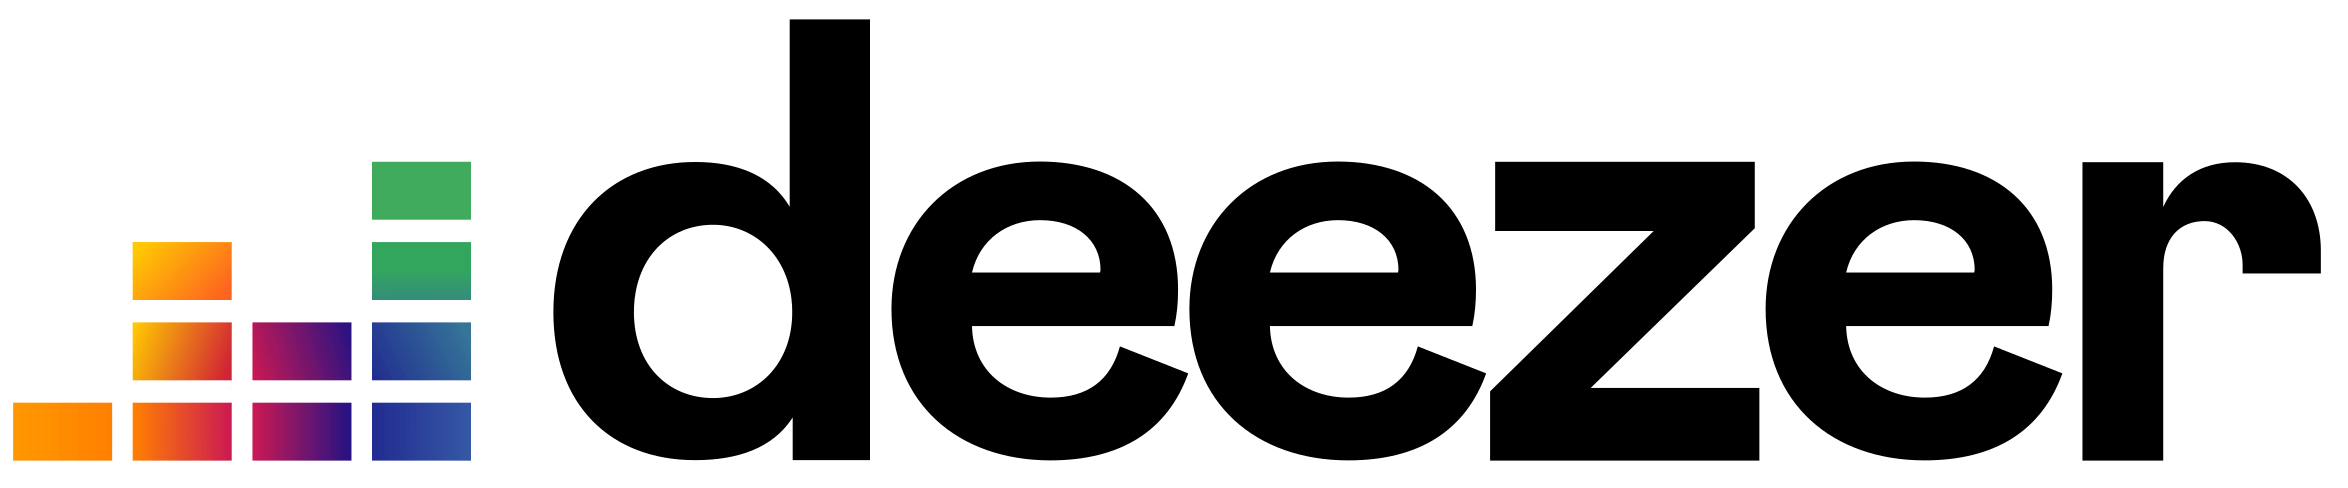 Deezer Logo